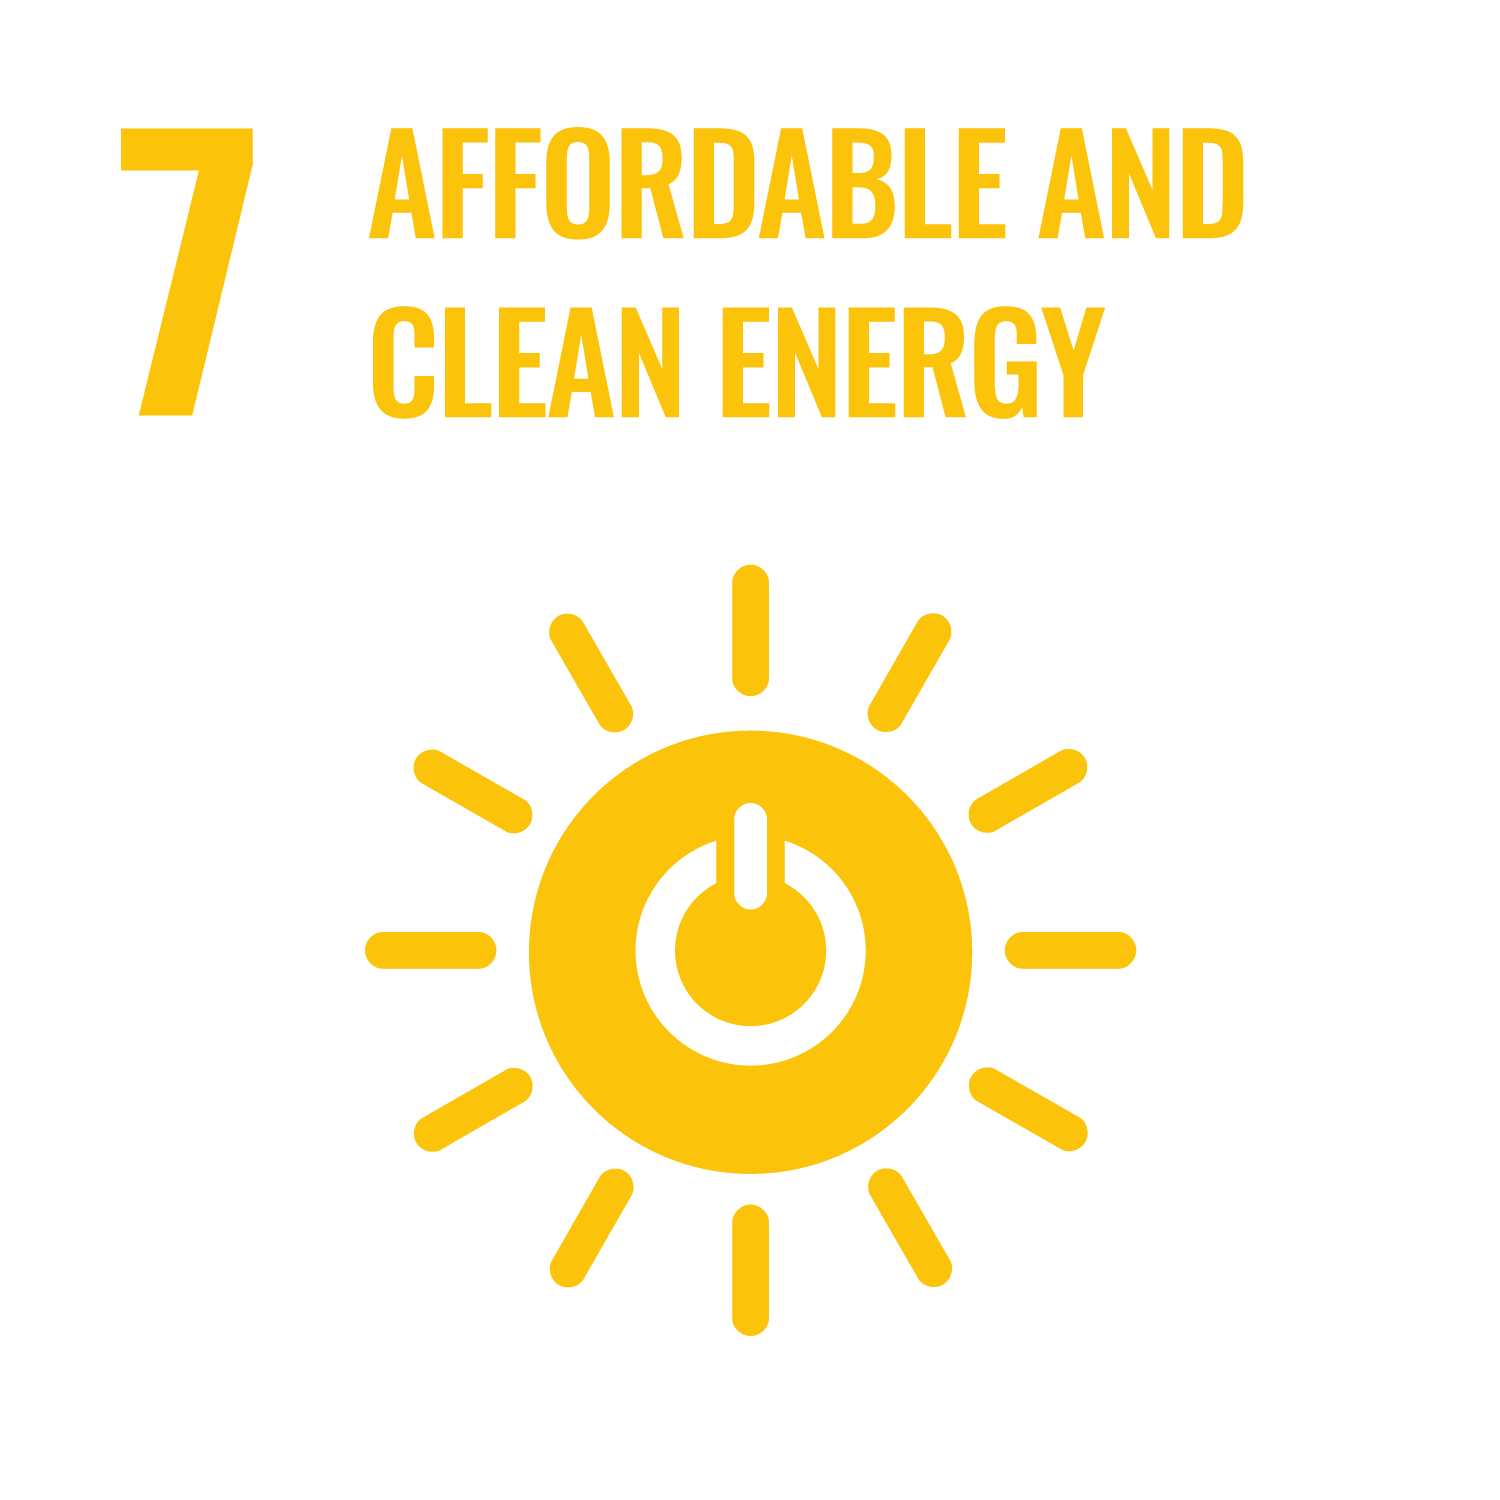 Ziel 7 Bezahlbare und saubere Energie